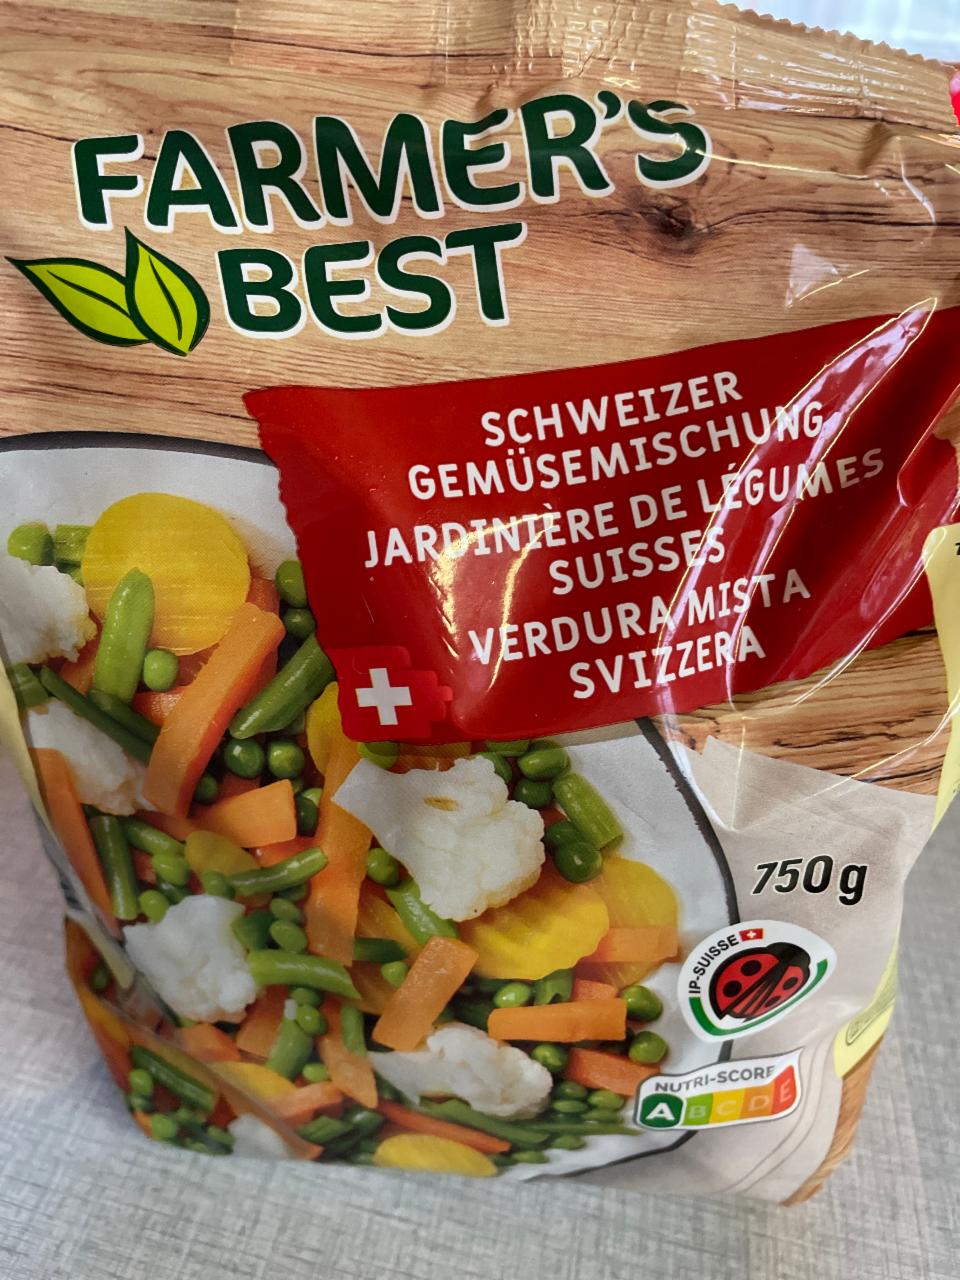 Fotografie - Schweizer Gemüsemichung Farmer's Best